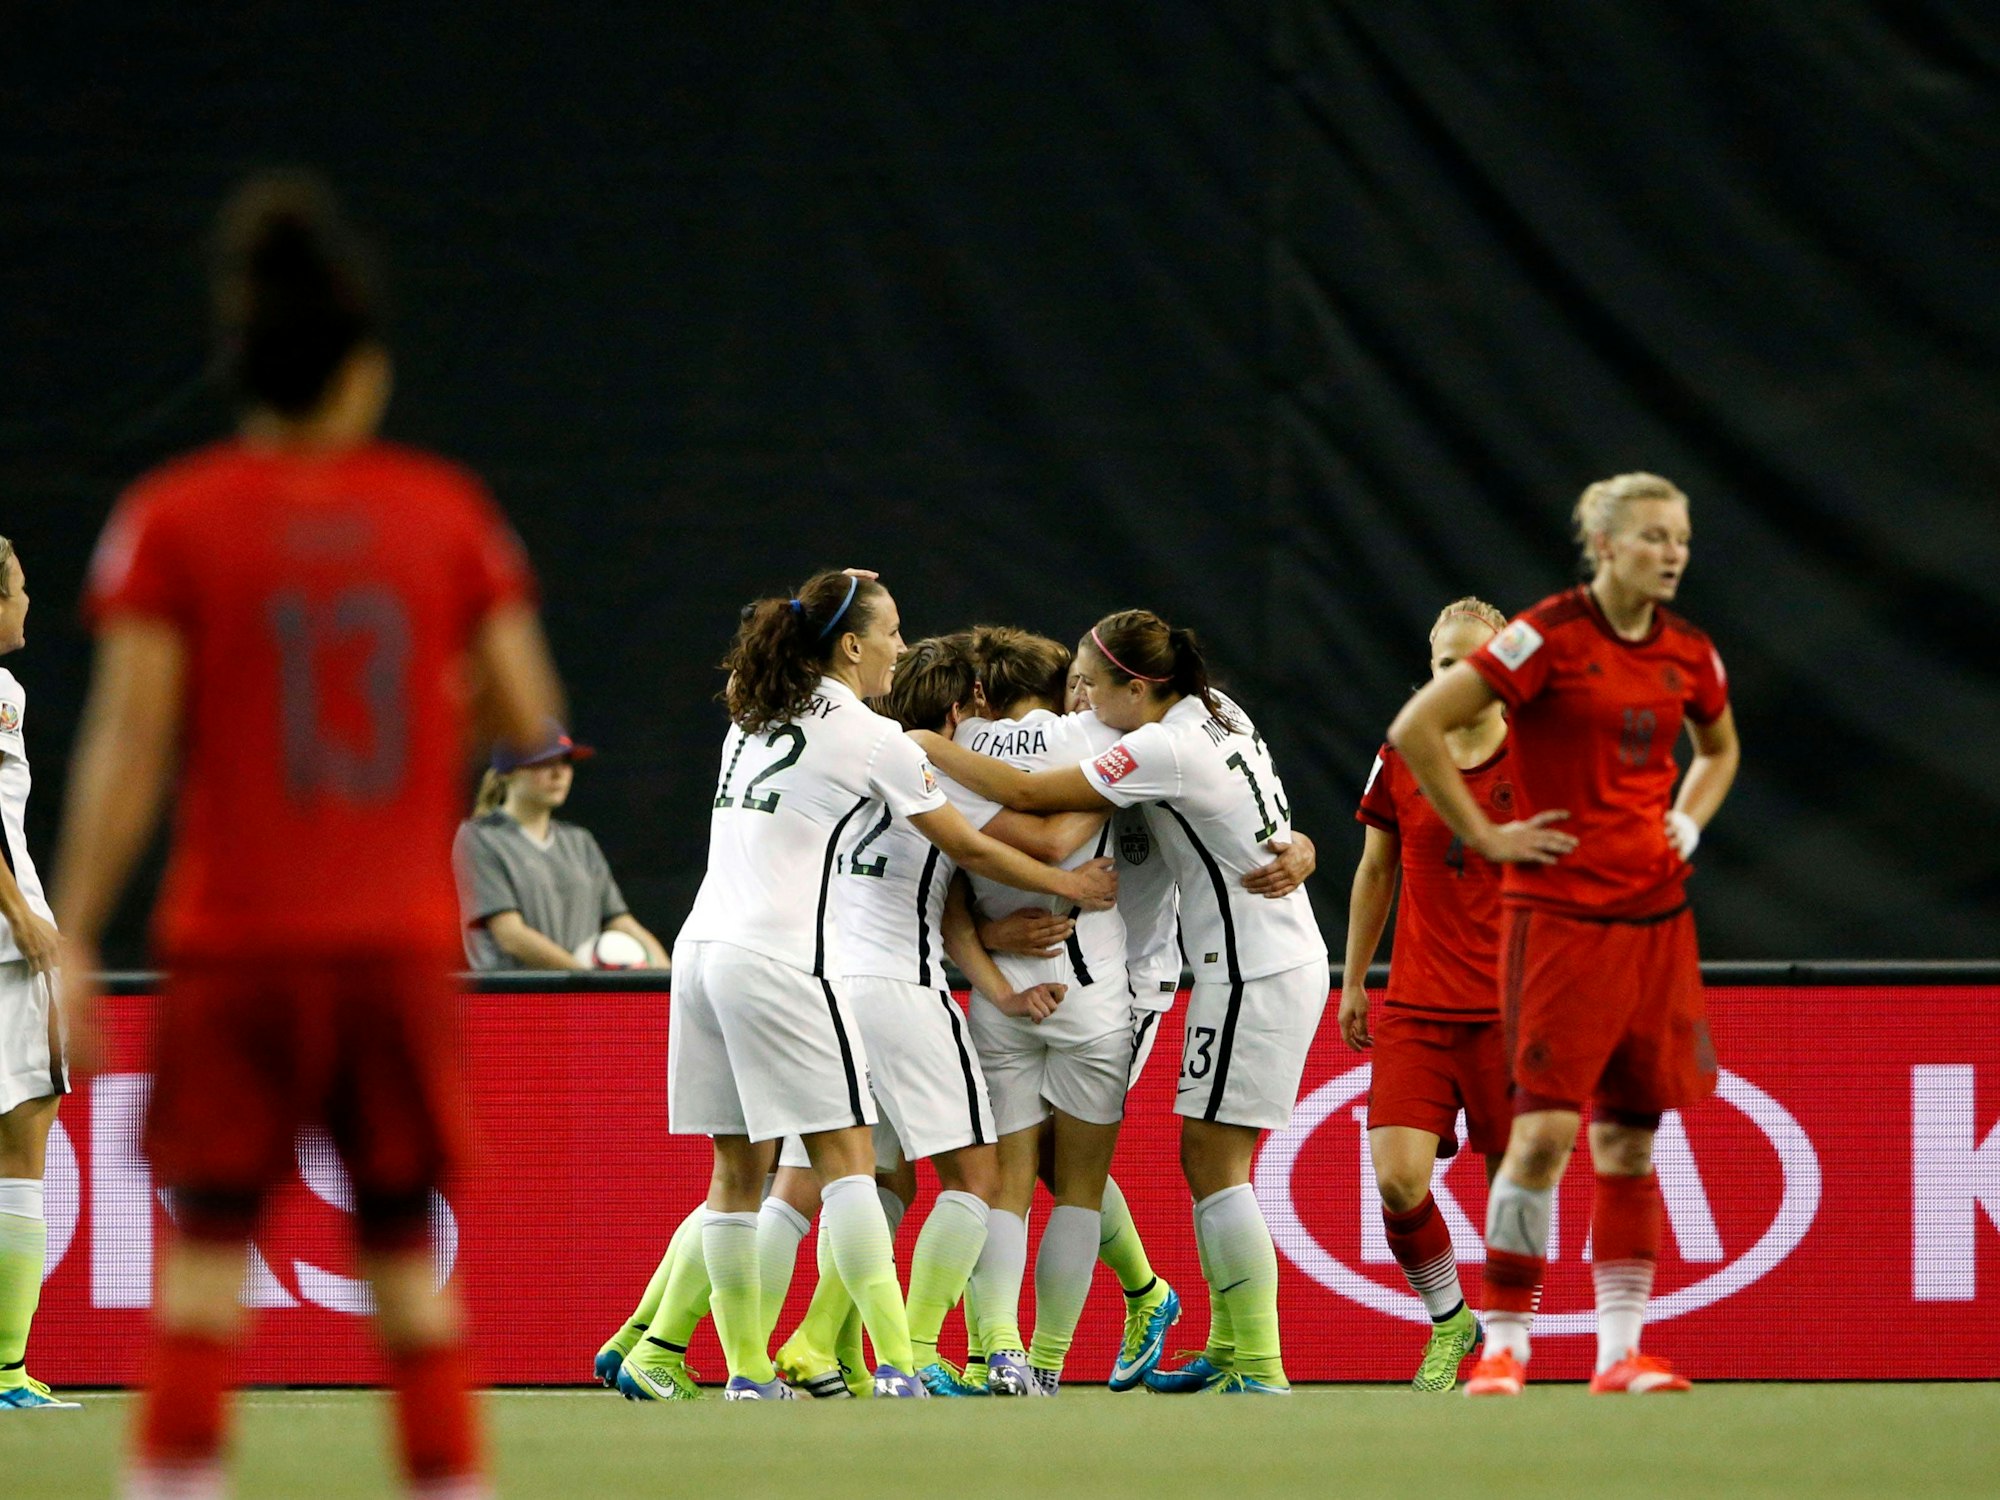 Das Team der USA jubelt nach ihrem Treffer gegen die deutsche Mannschaft.